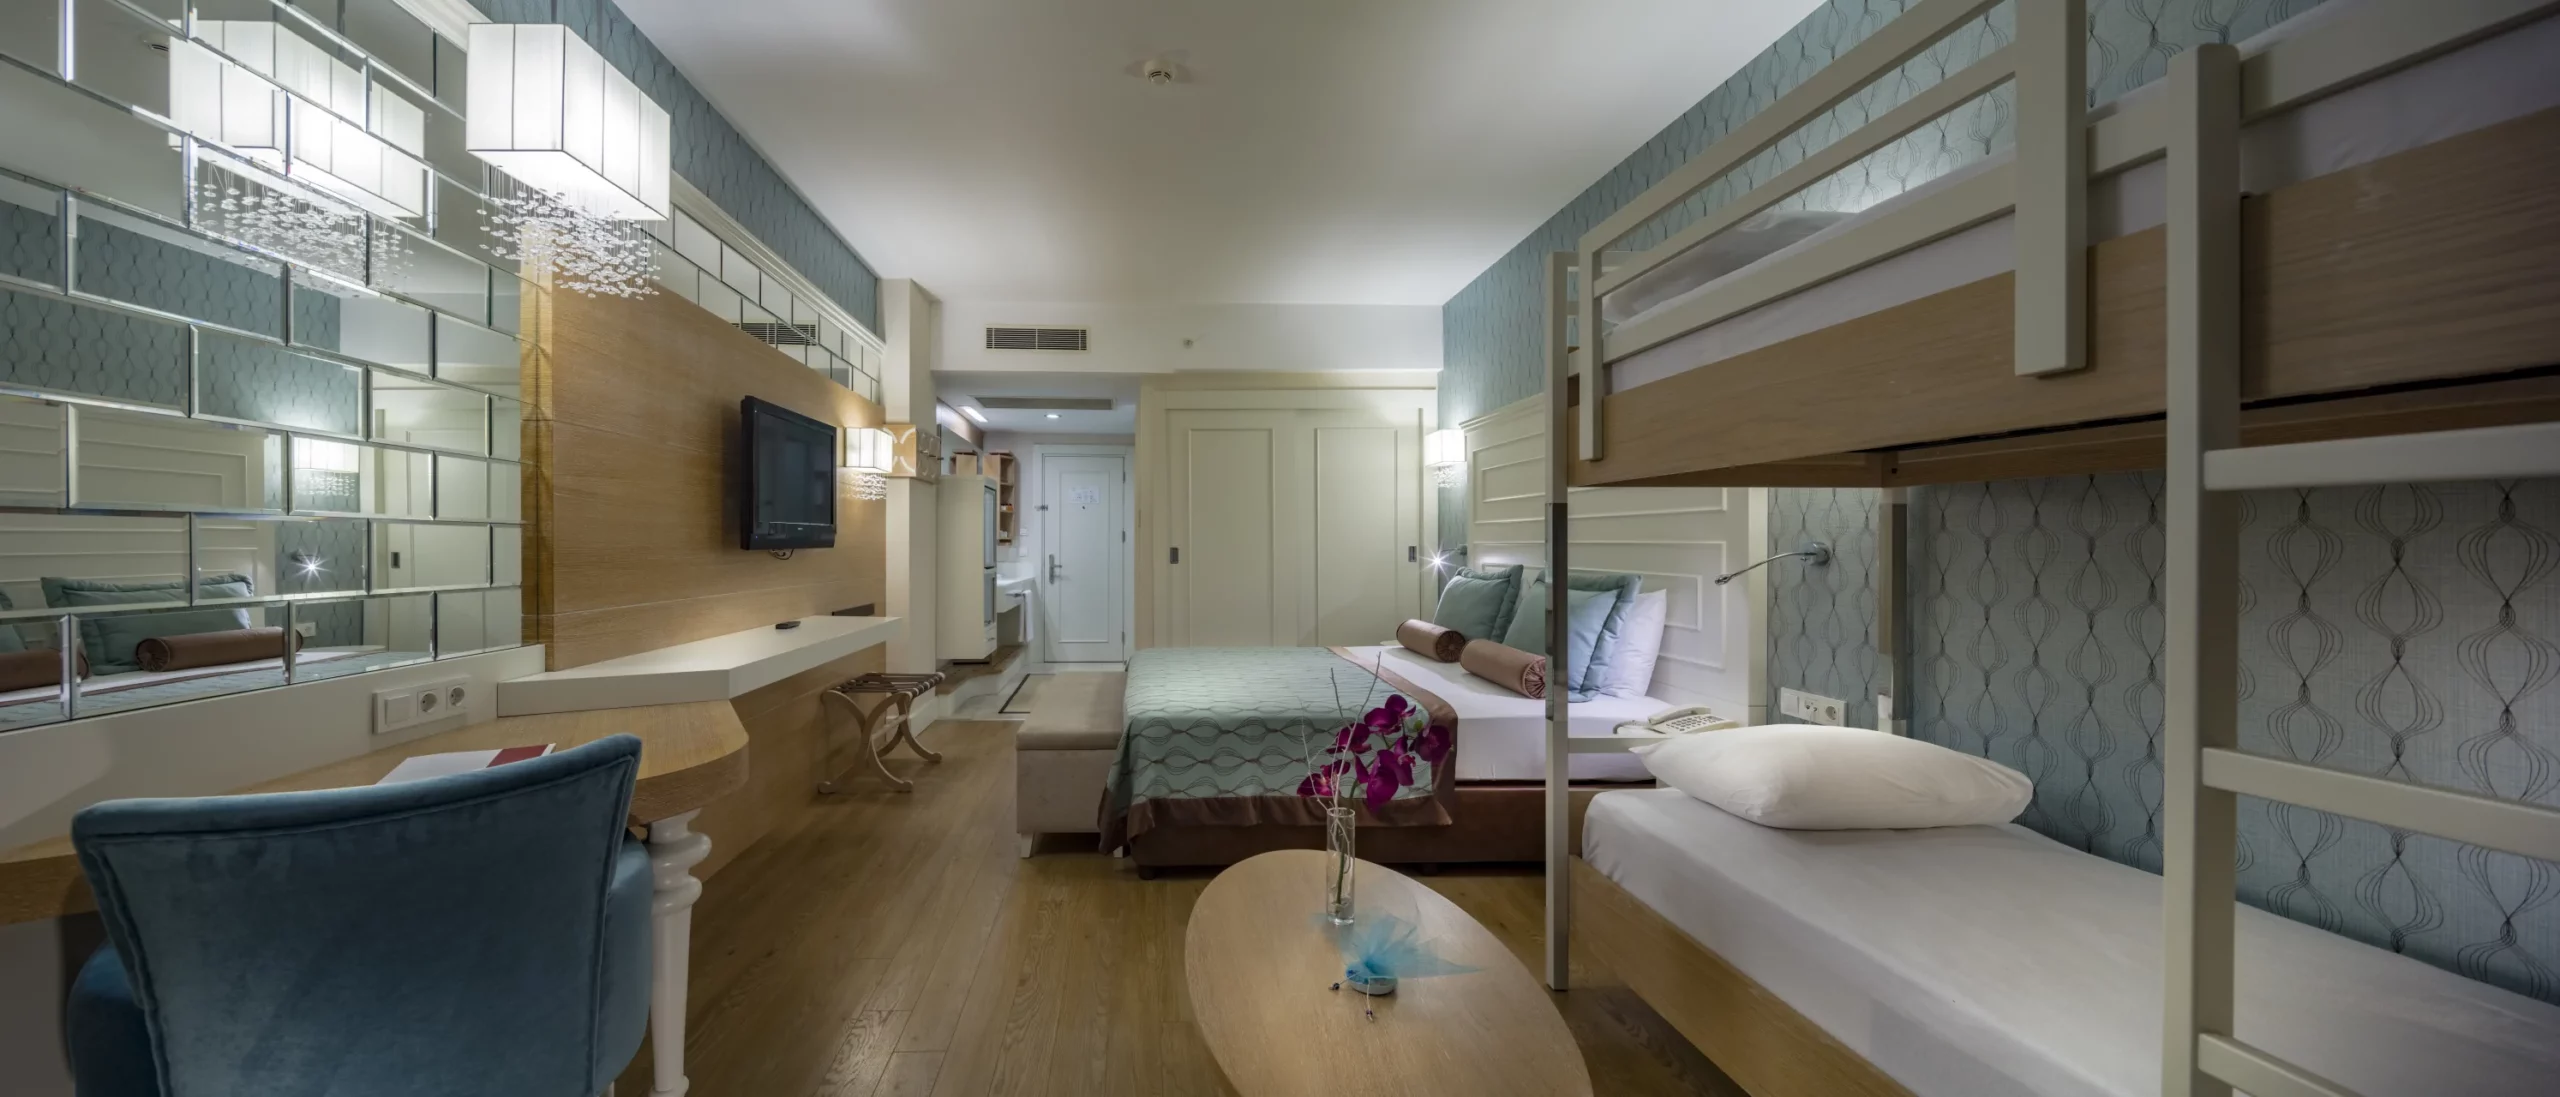 Trendy-verbena-family-room-bunkbed-1-scaled